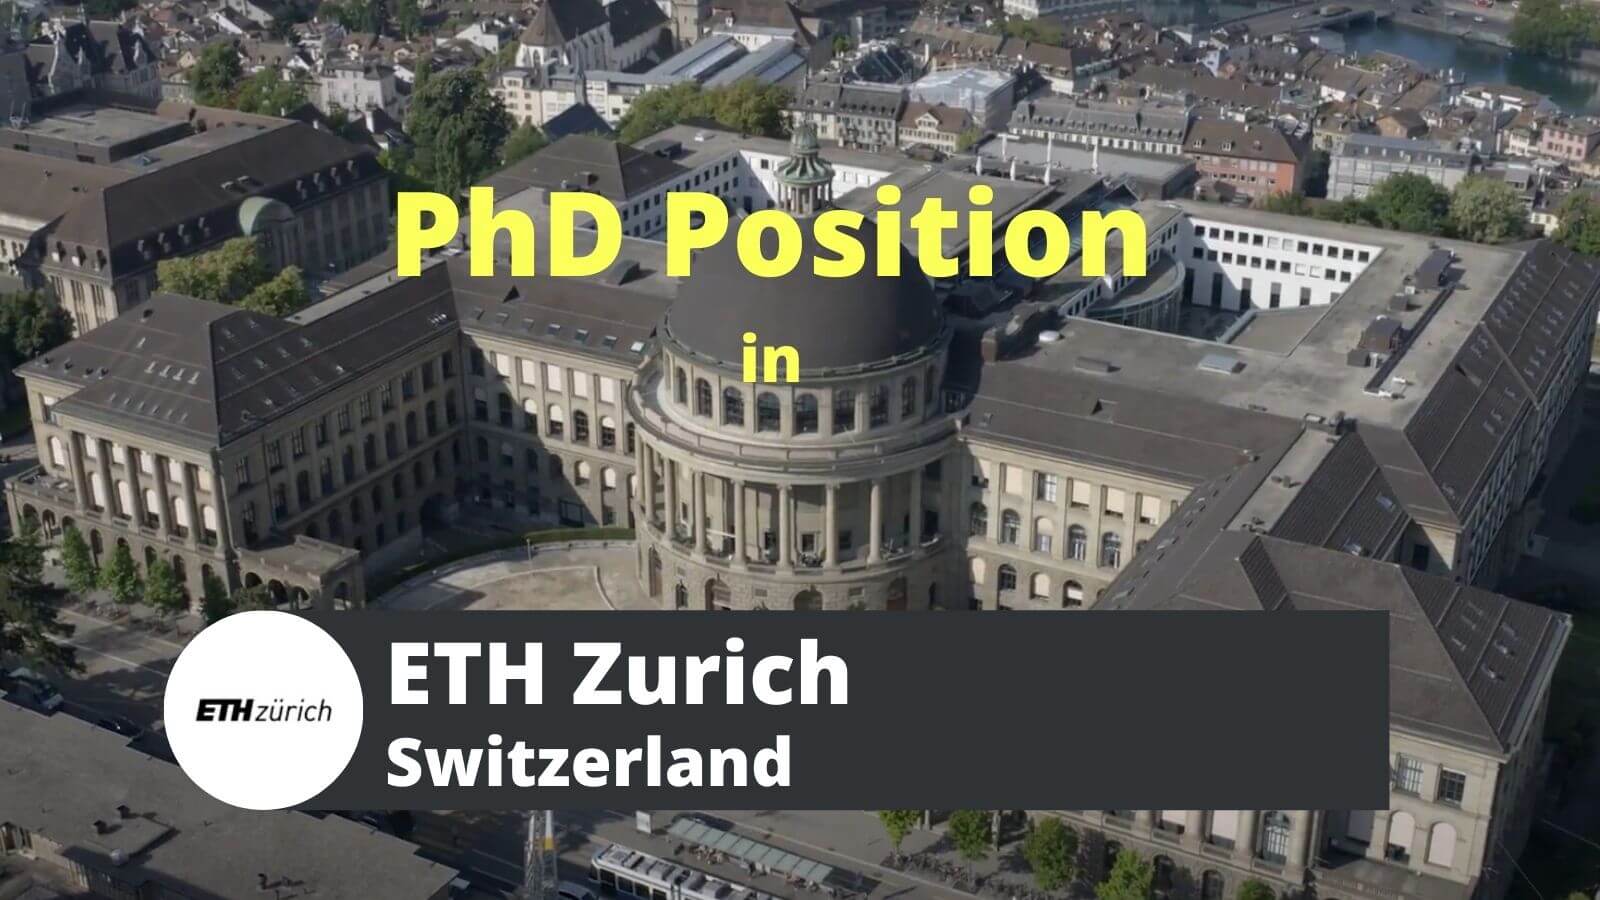 PhD Positions in ETH Zurich Switzerland